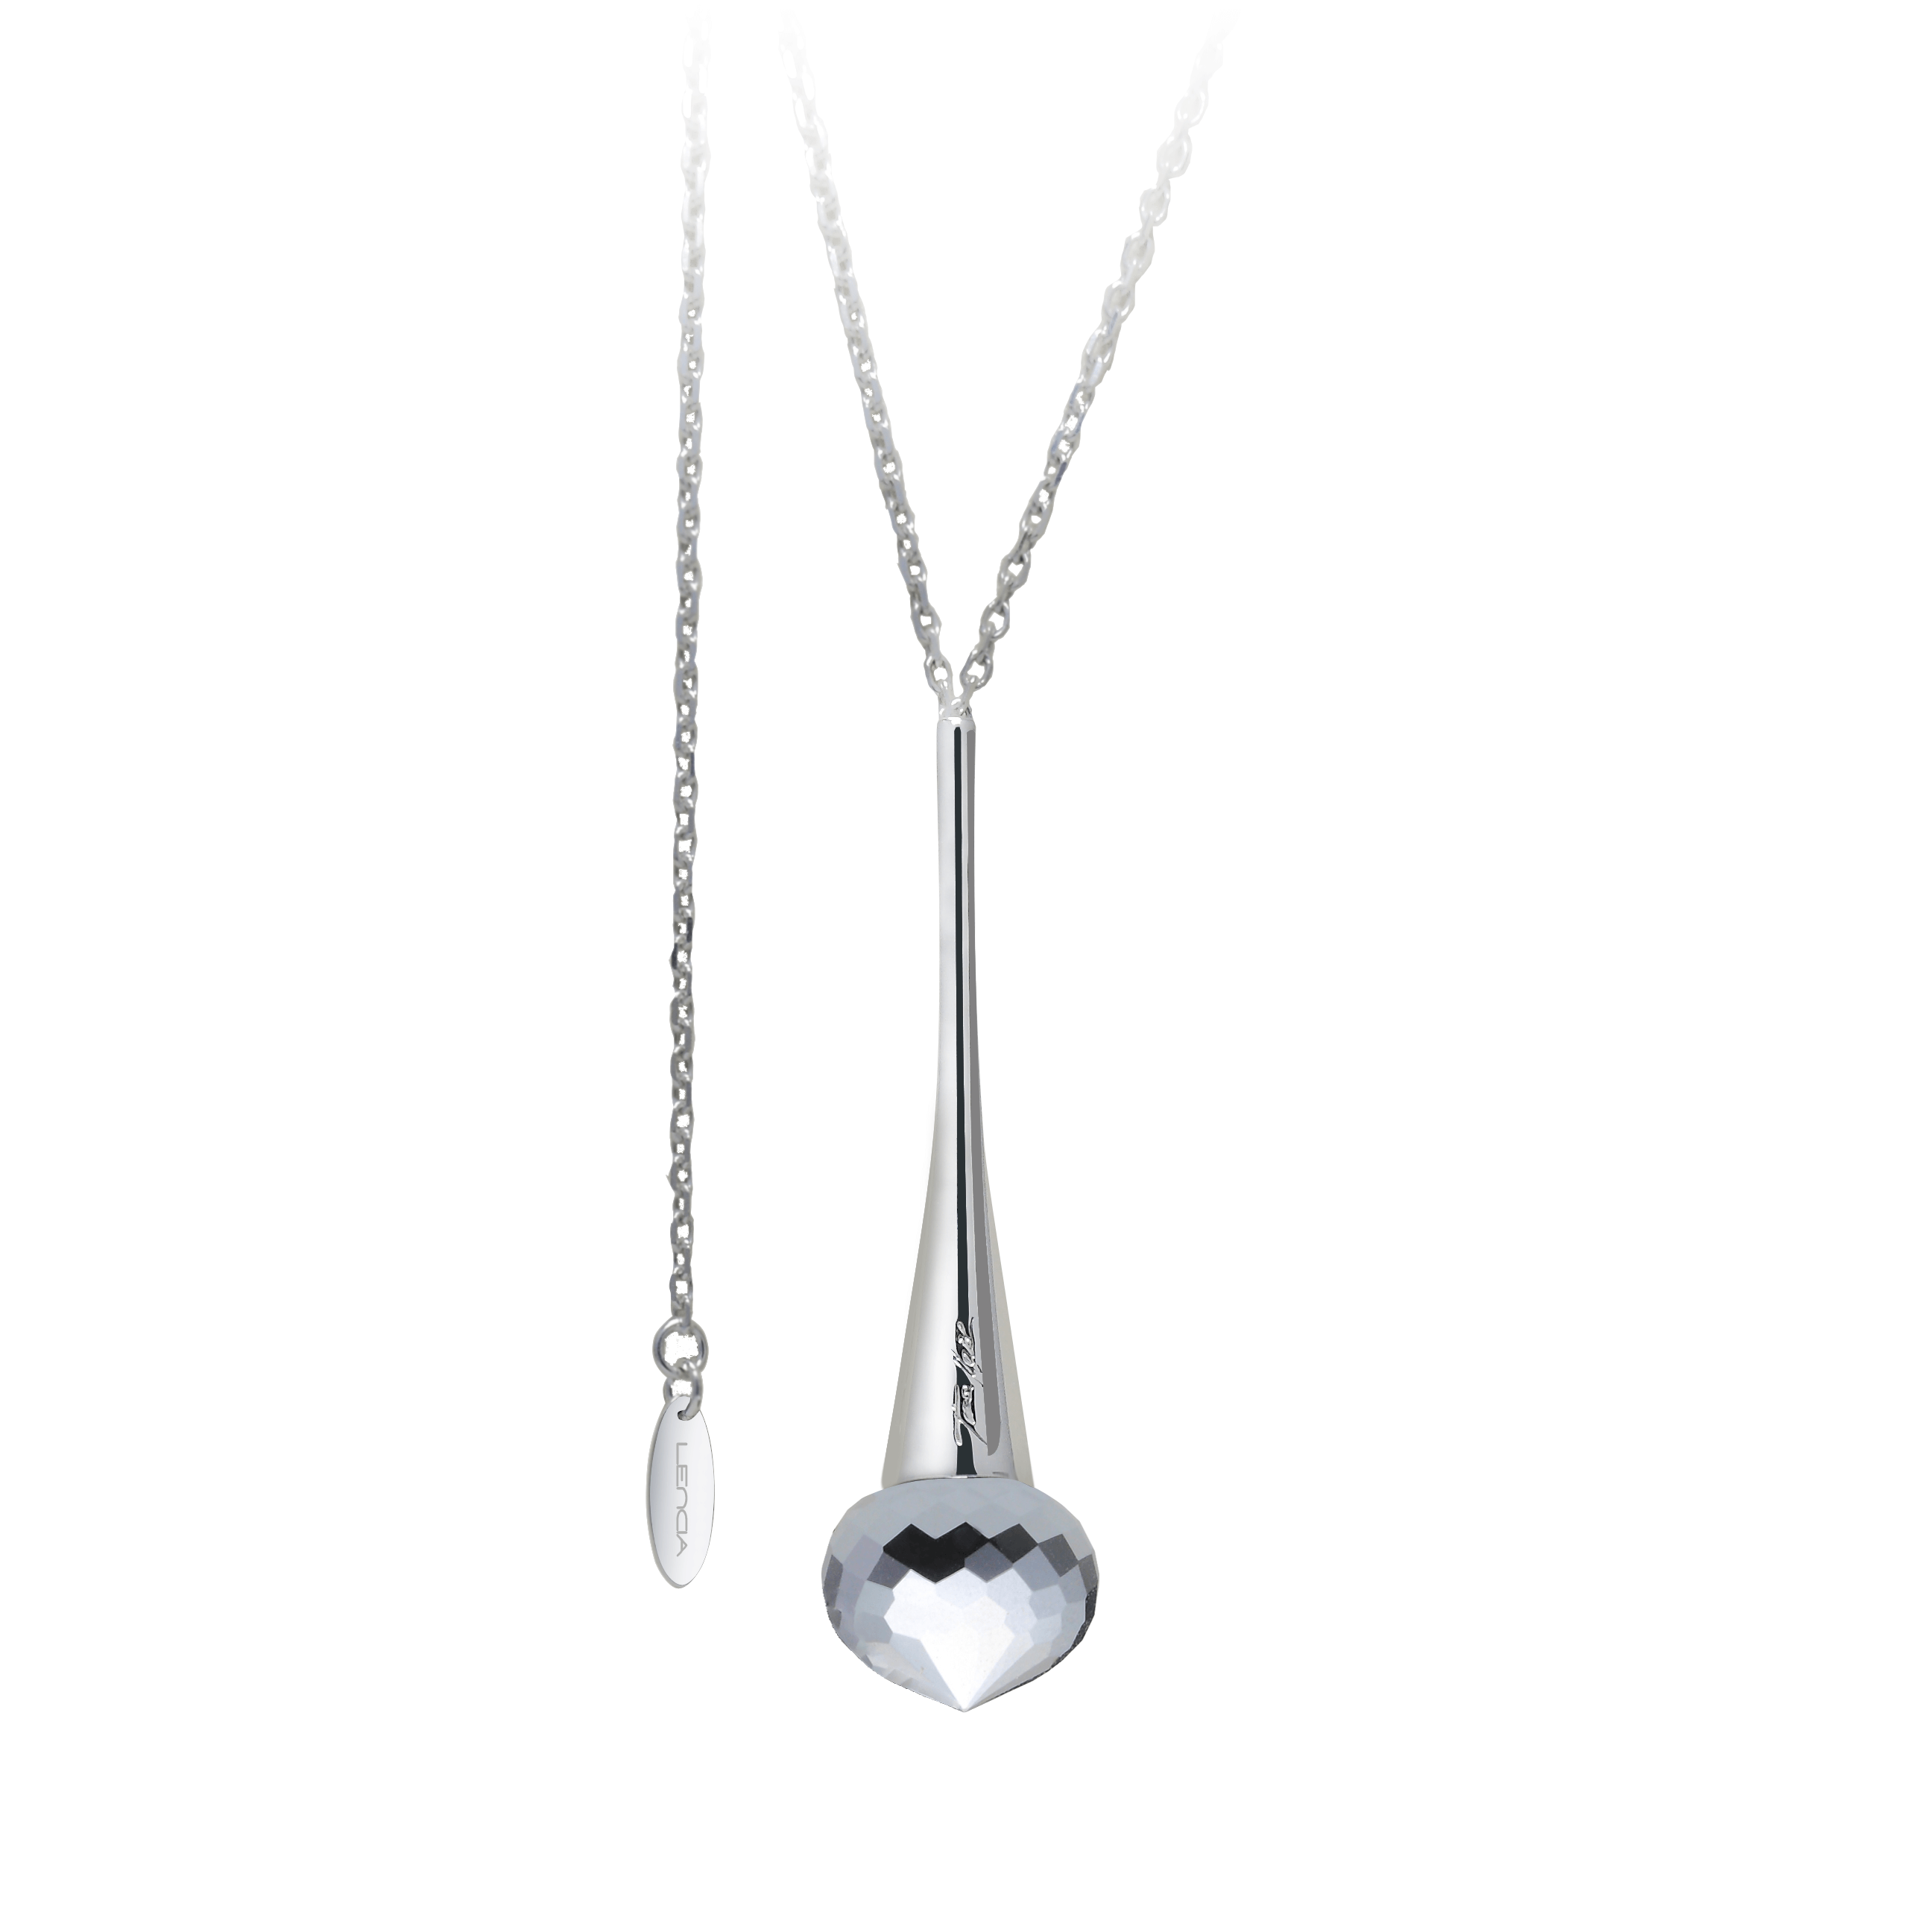 Necklace silver 925/000 rhodium platedhematite 16x14 mm - 1x